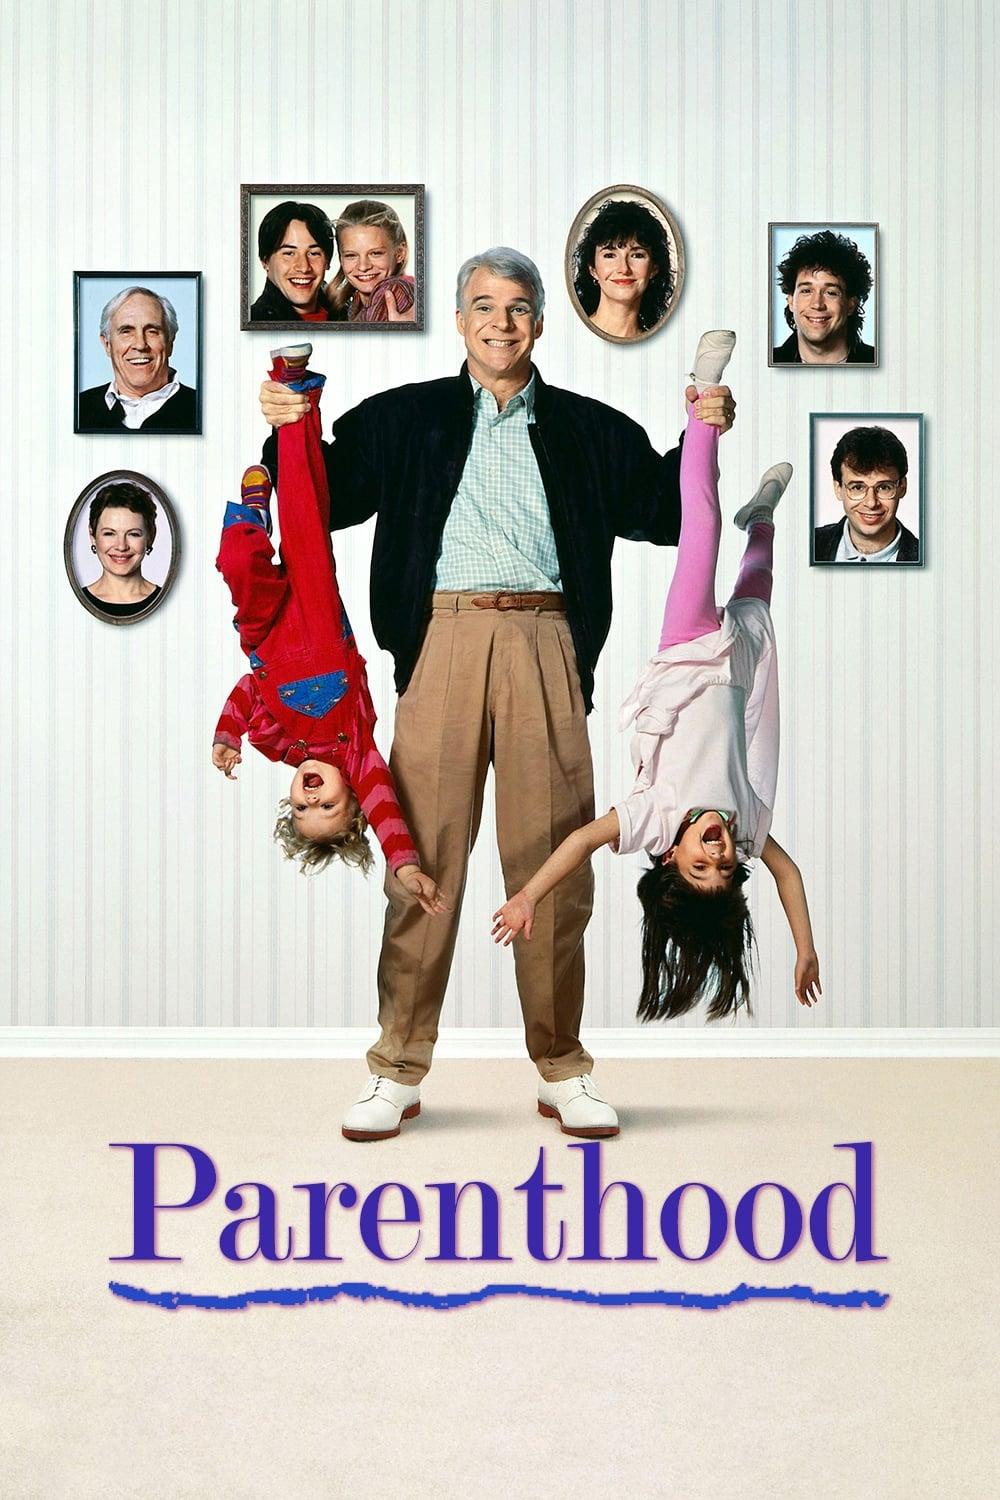 Parenthood poster